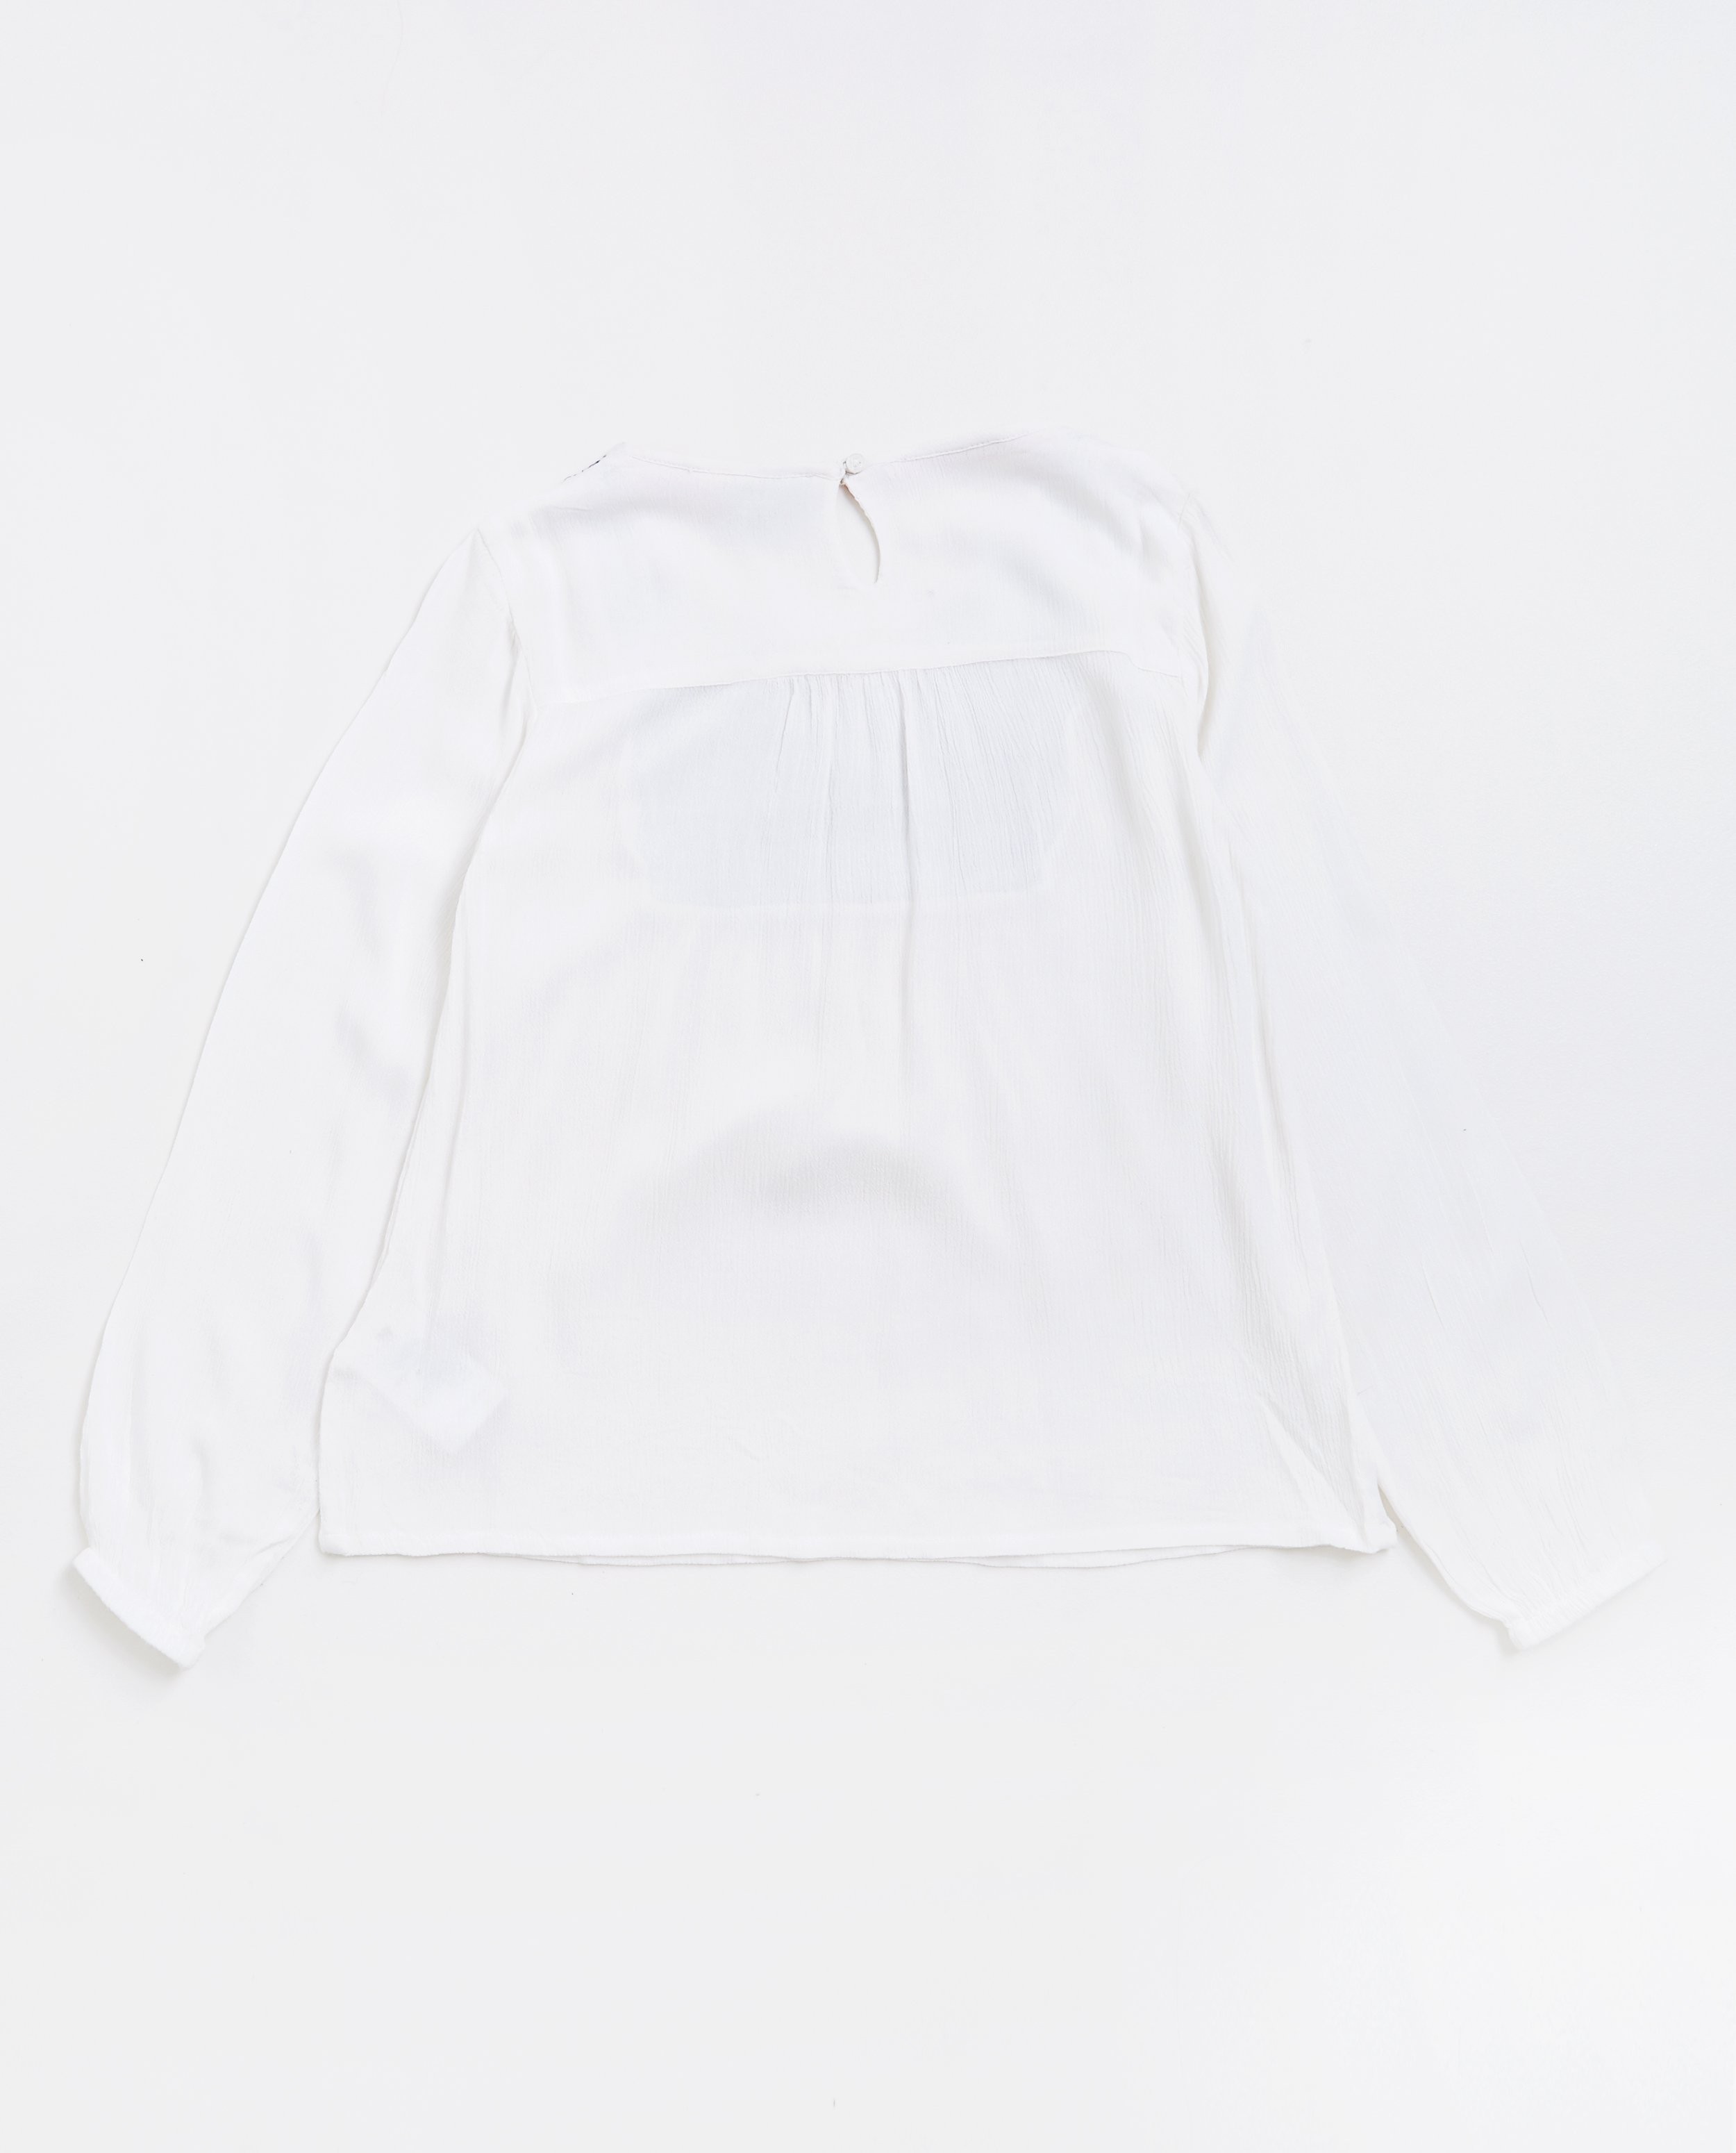 Hemden - Roomwitte blouse met borduursel